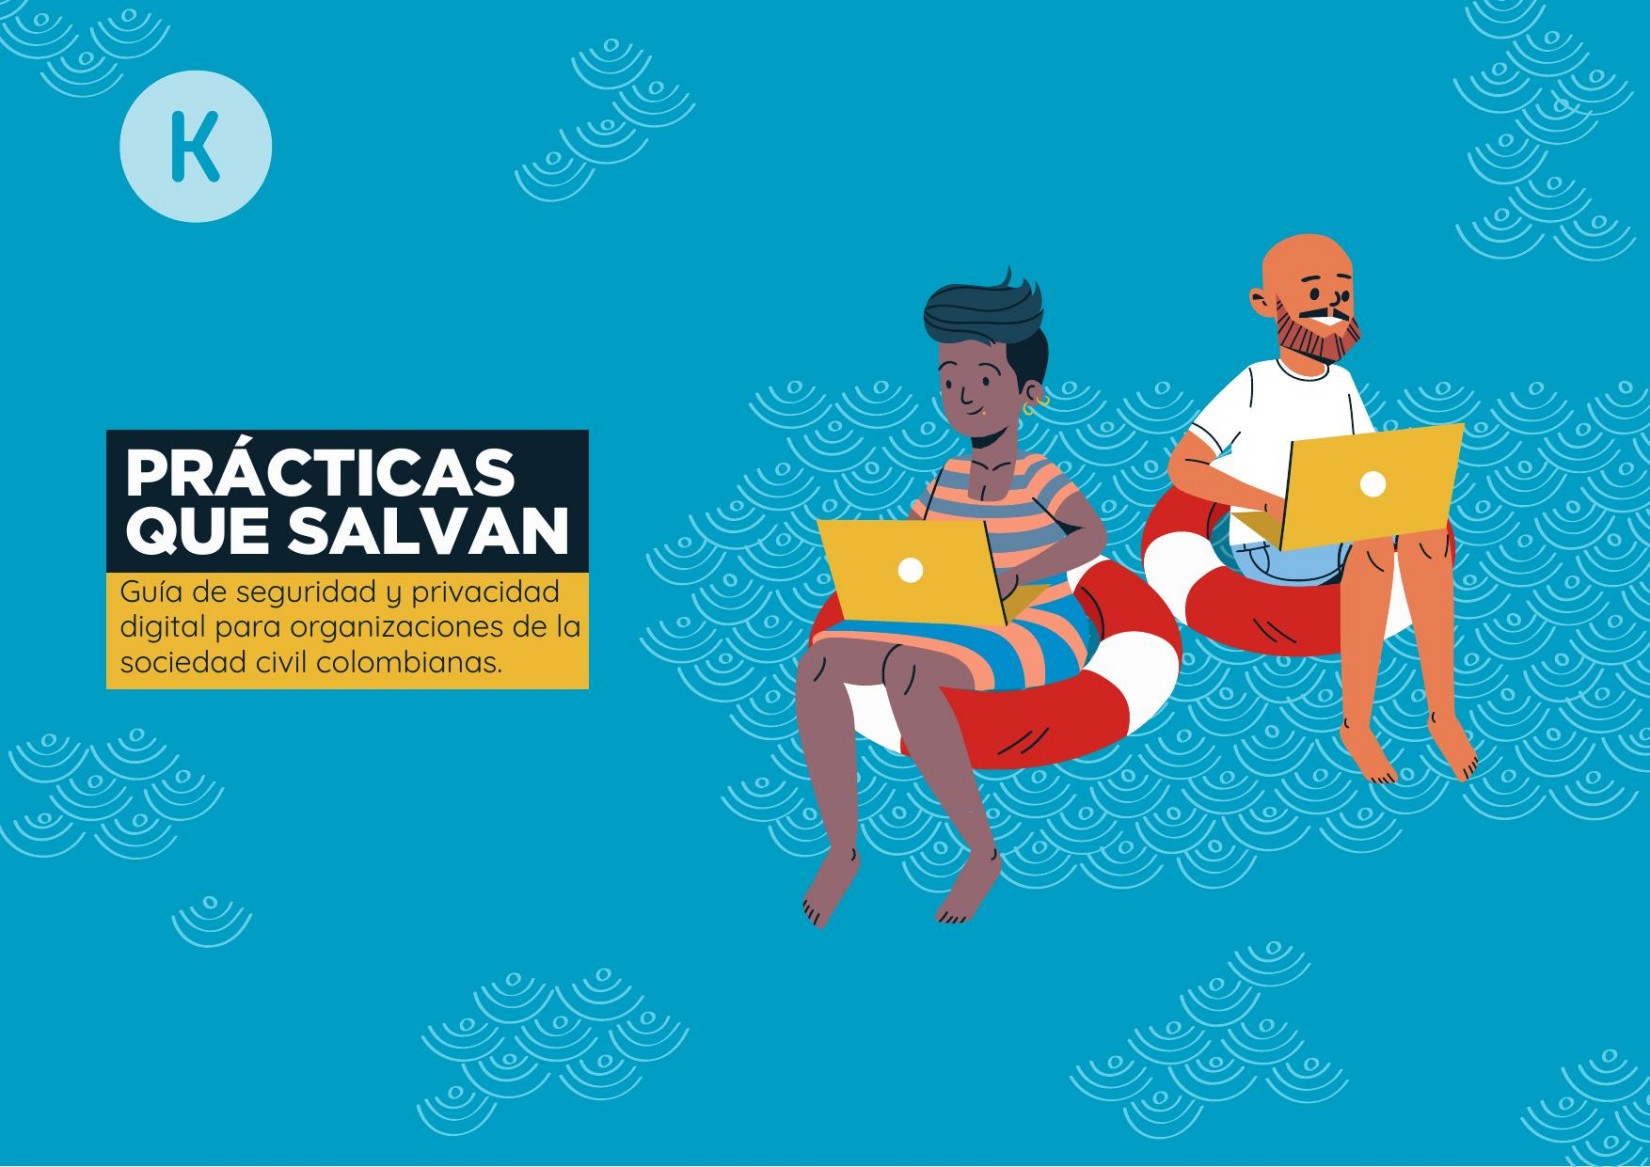 Practicas que salvan: Guía de seguridad y privacidad digital para organizaciones de la sociedad civil colombianas